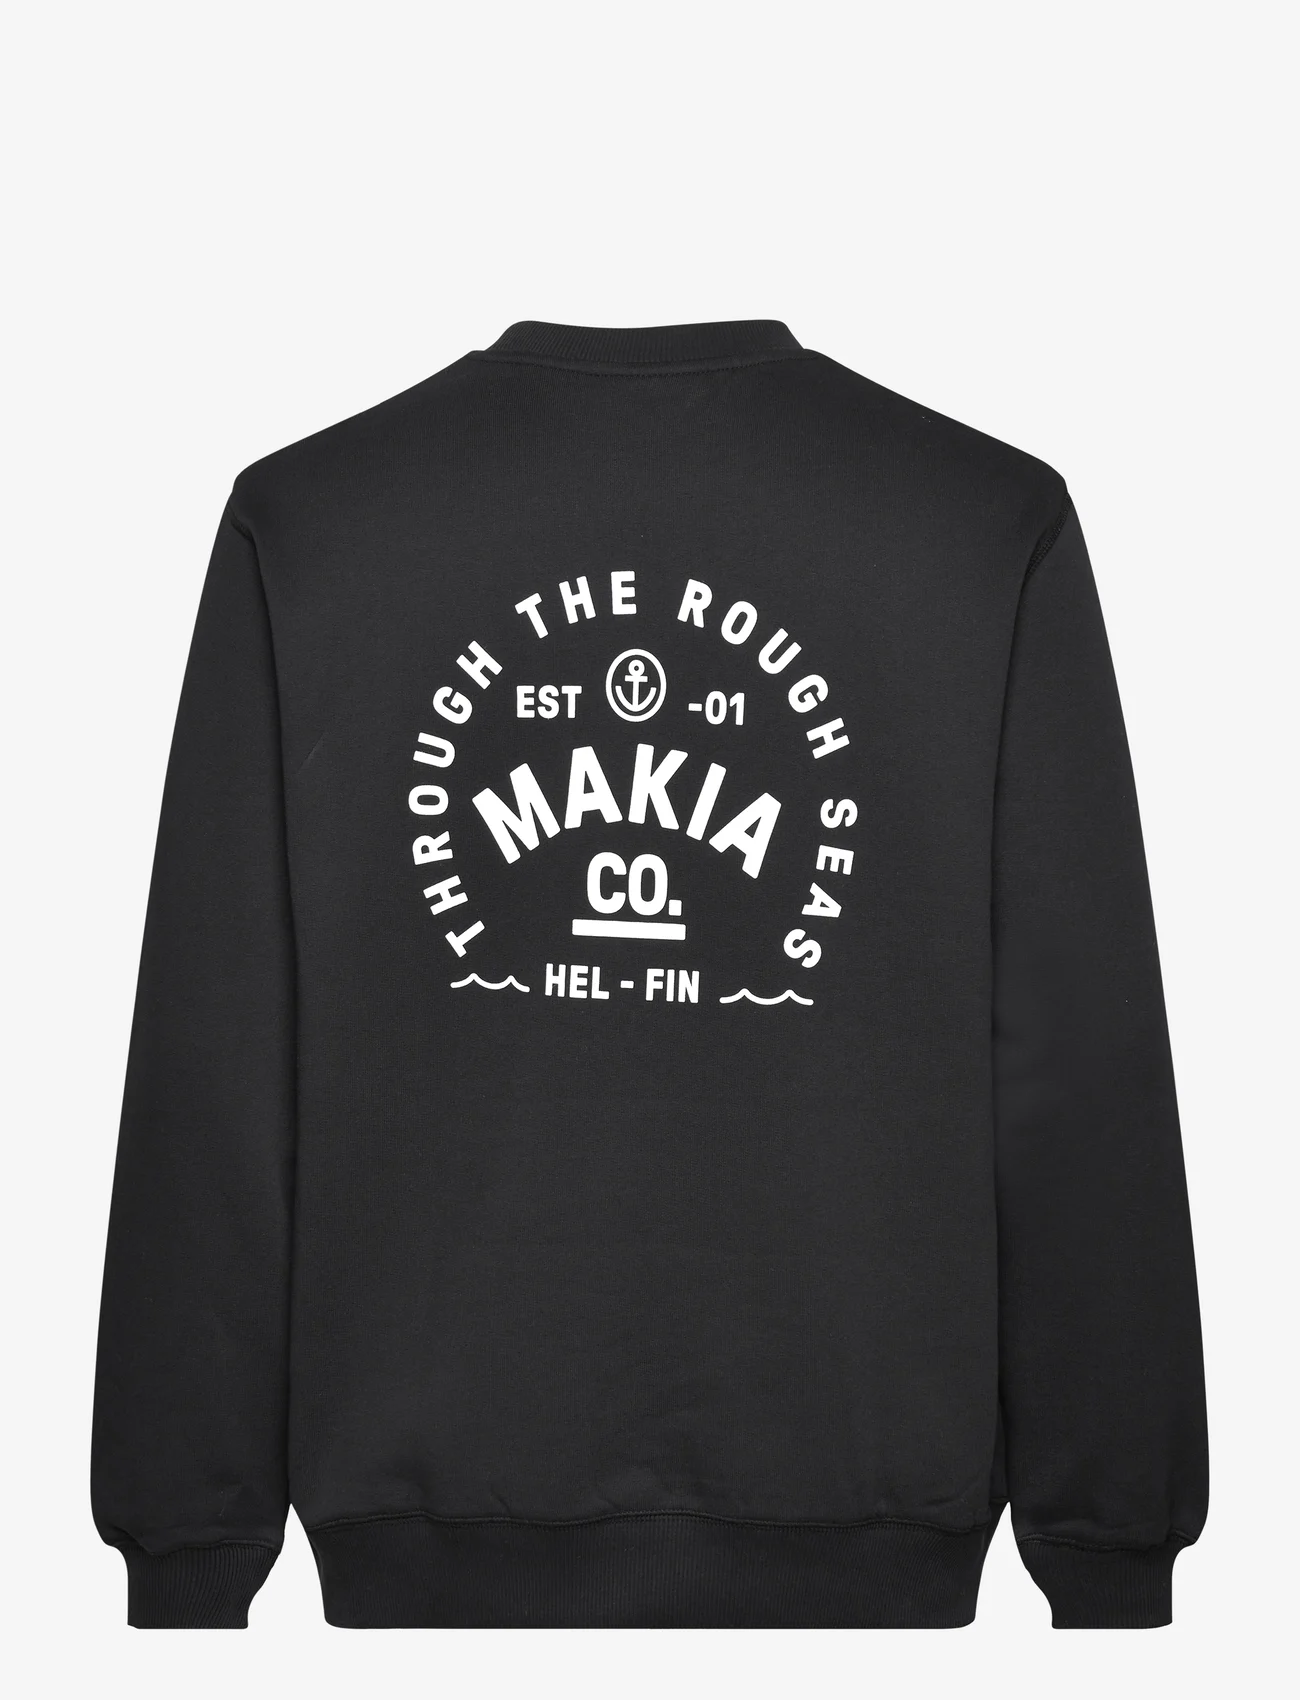 Makia - Ferry Sweatshirt - truien en hoodies - black - 1